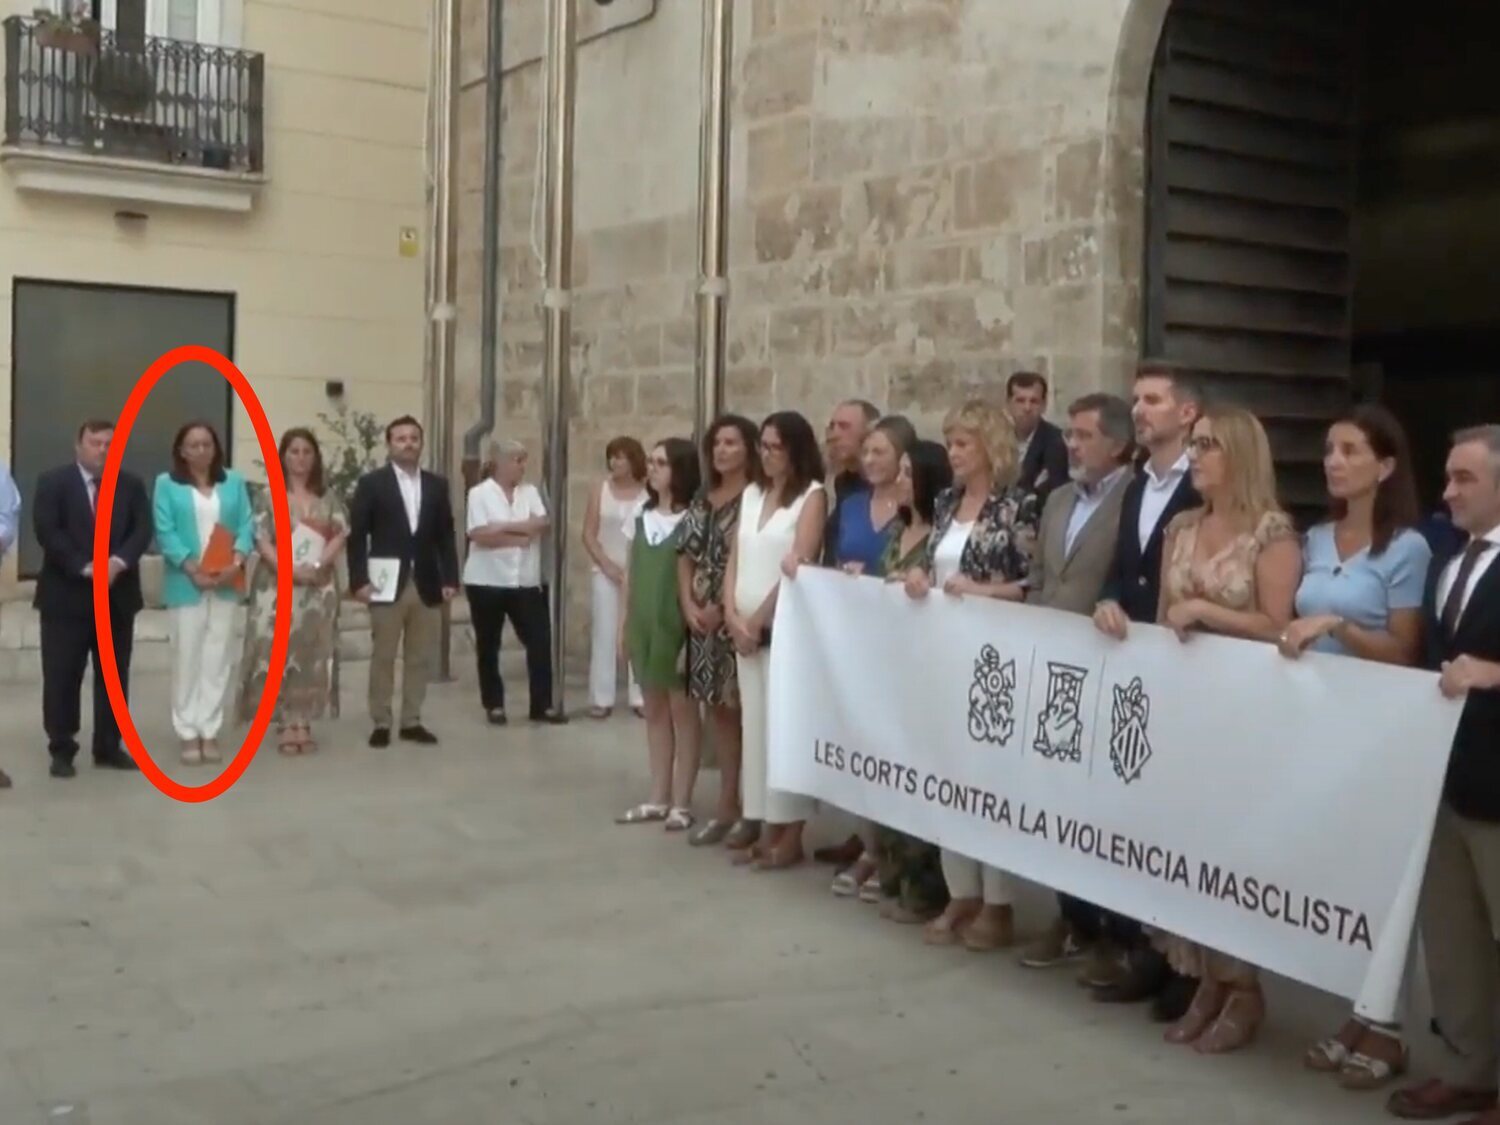 La presidenta de las Cortes Valencianas, Llanos Massó (VOX), rechaza alzar un cartel en condena de un asesinato machista